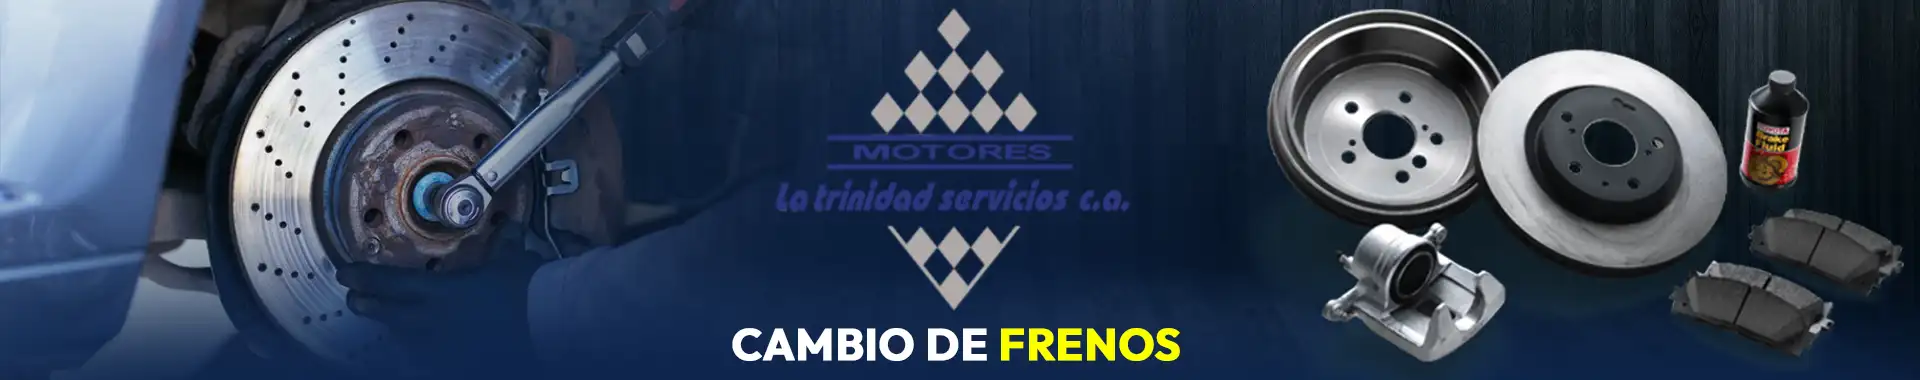 Imagen 5 del perfil de Motores La Trinidad - Servicios